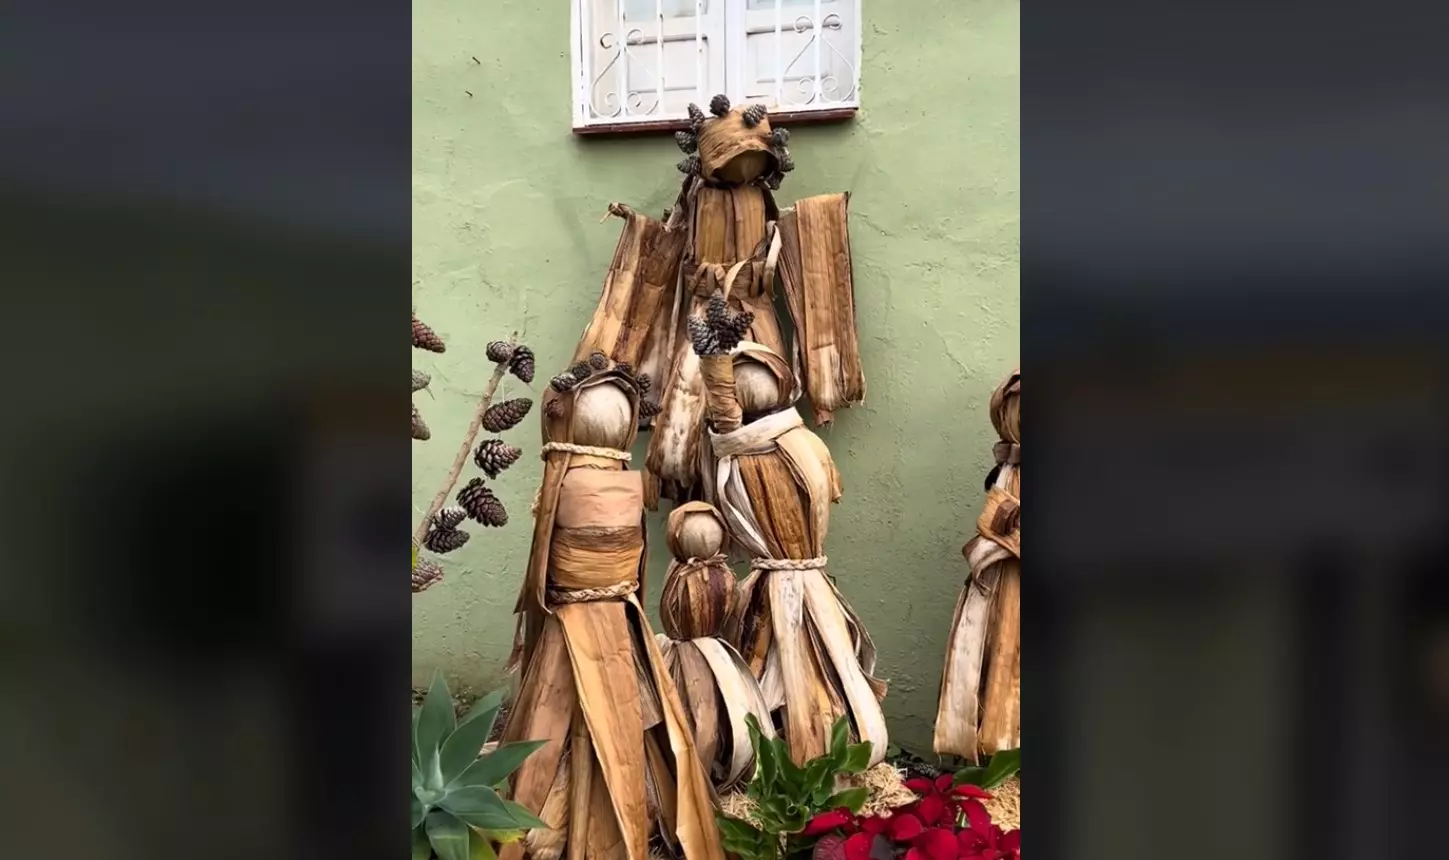 El espectacular belén navideño en el norte de Tenerife hecho con plantas de platanera